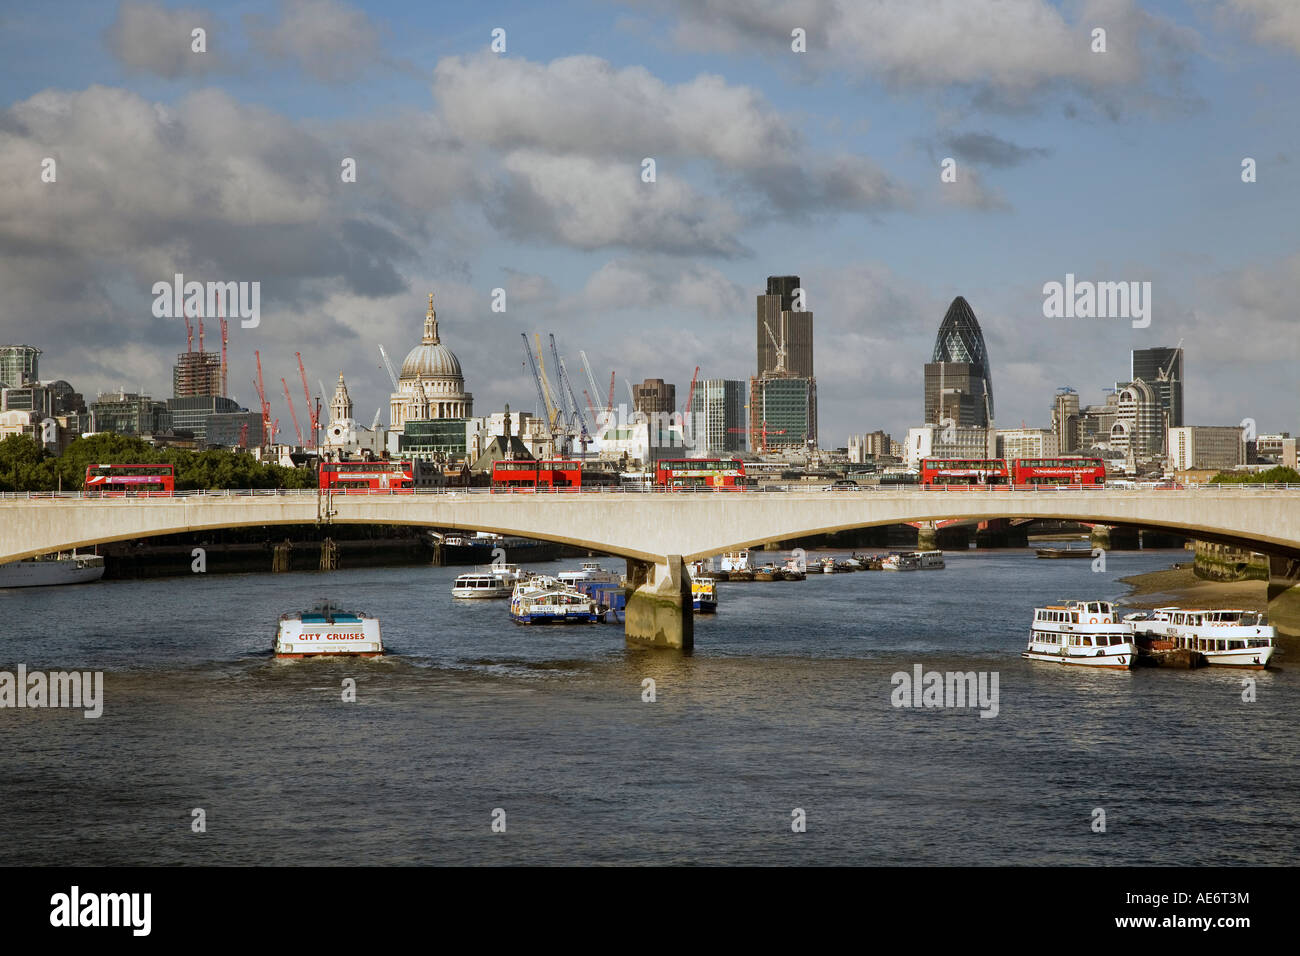 6 London bus à impériale rouge sur Waterloo Bridge et de la City de Londres en Angleterre Banque D'Images